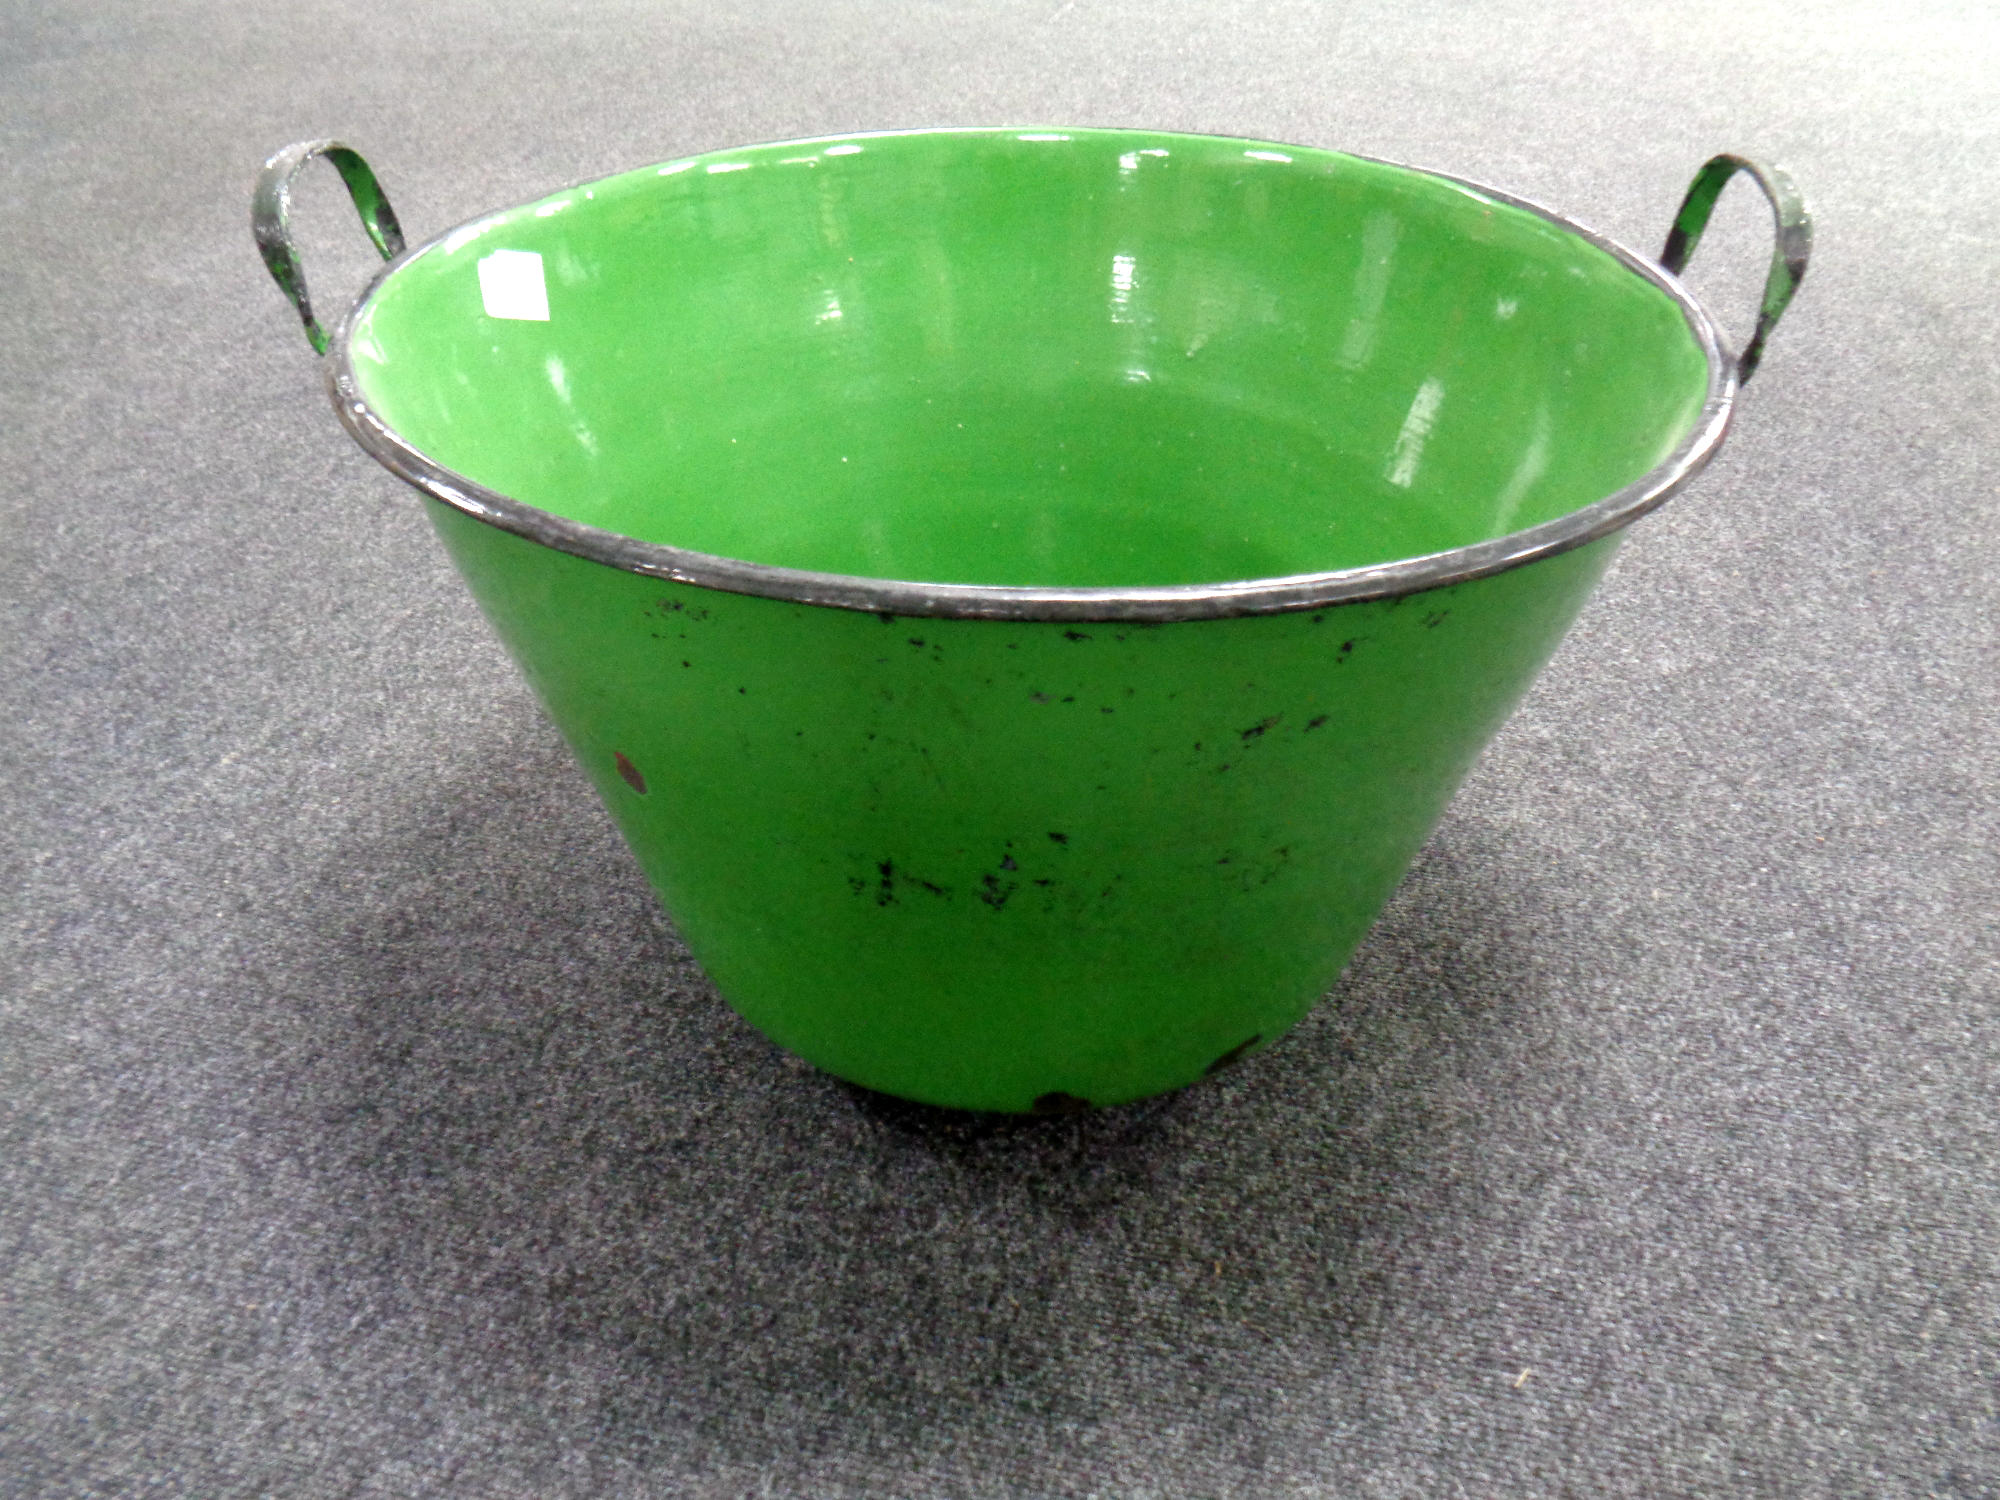 A large green enamel bin